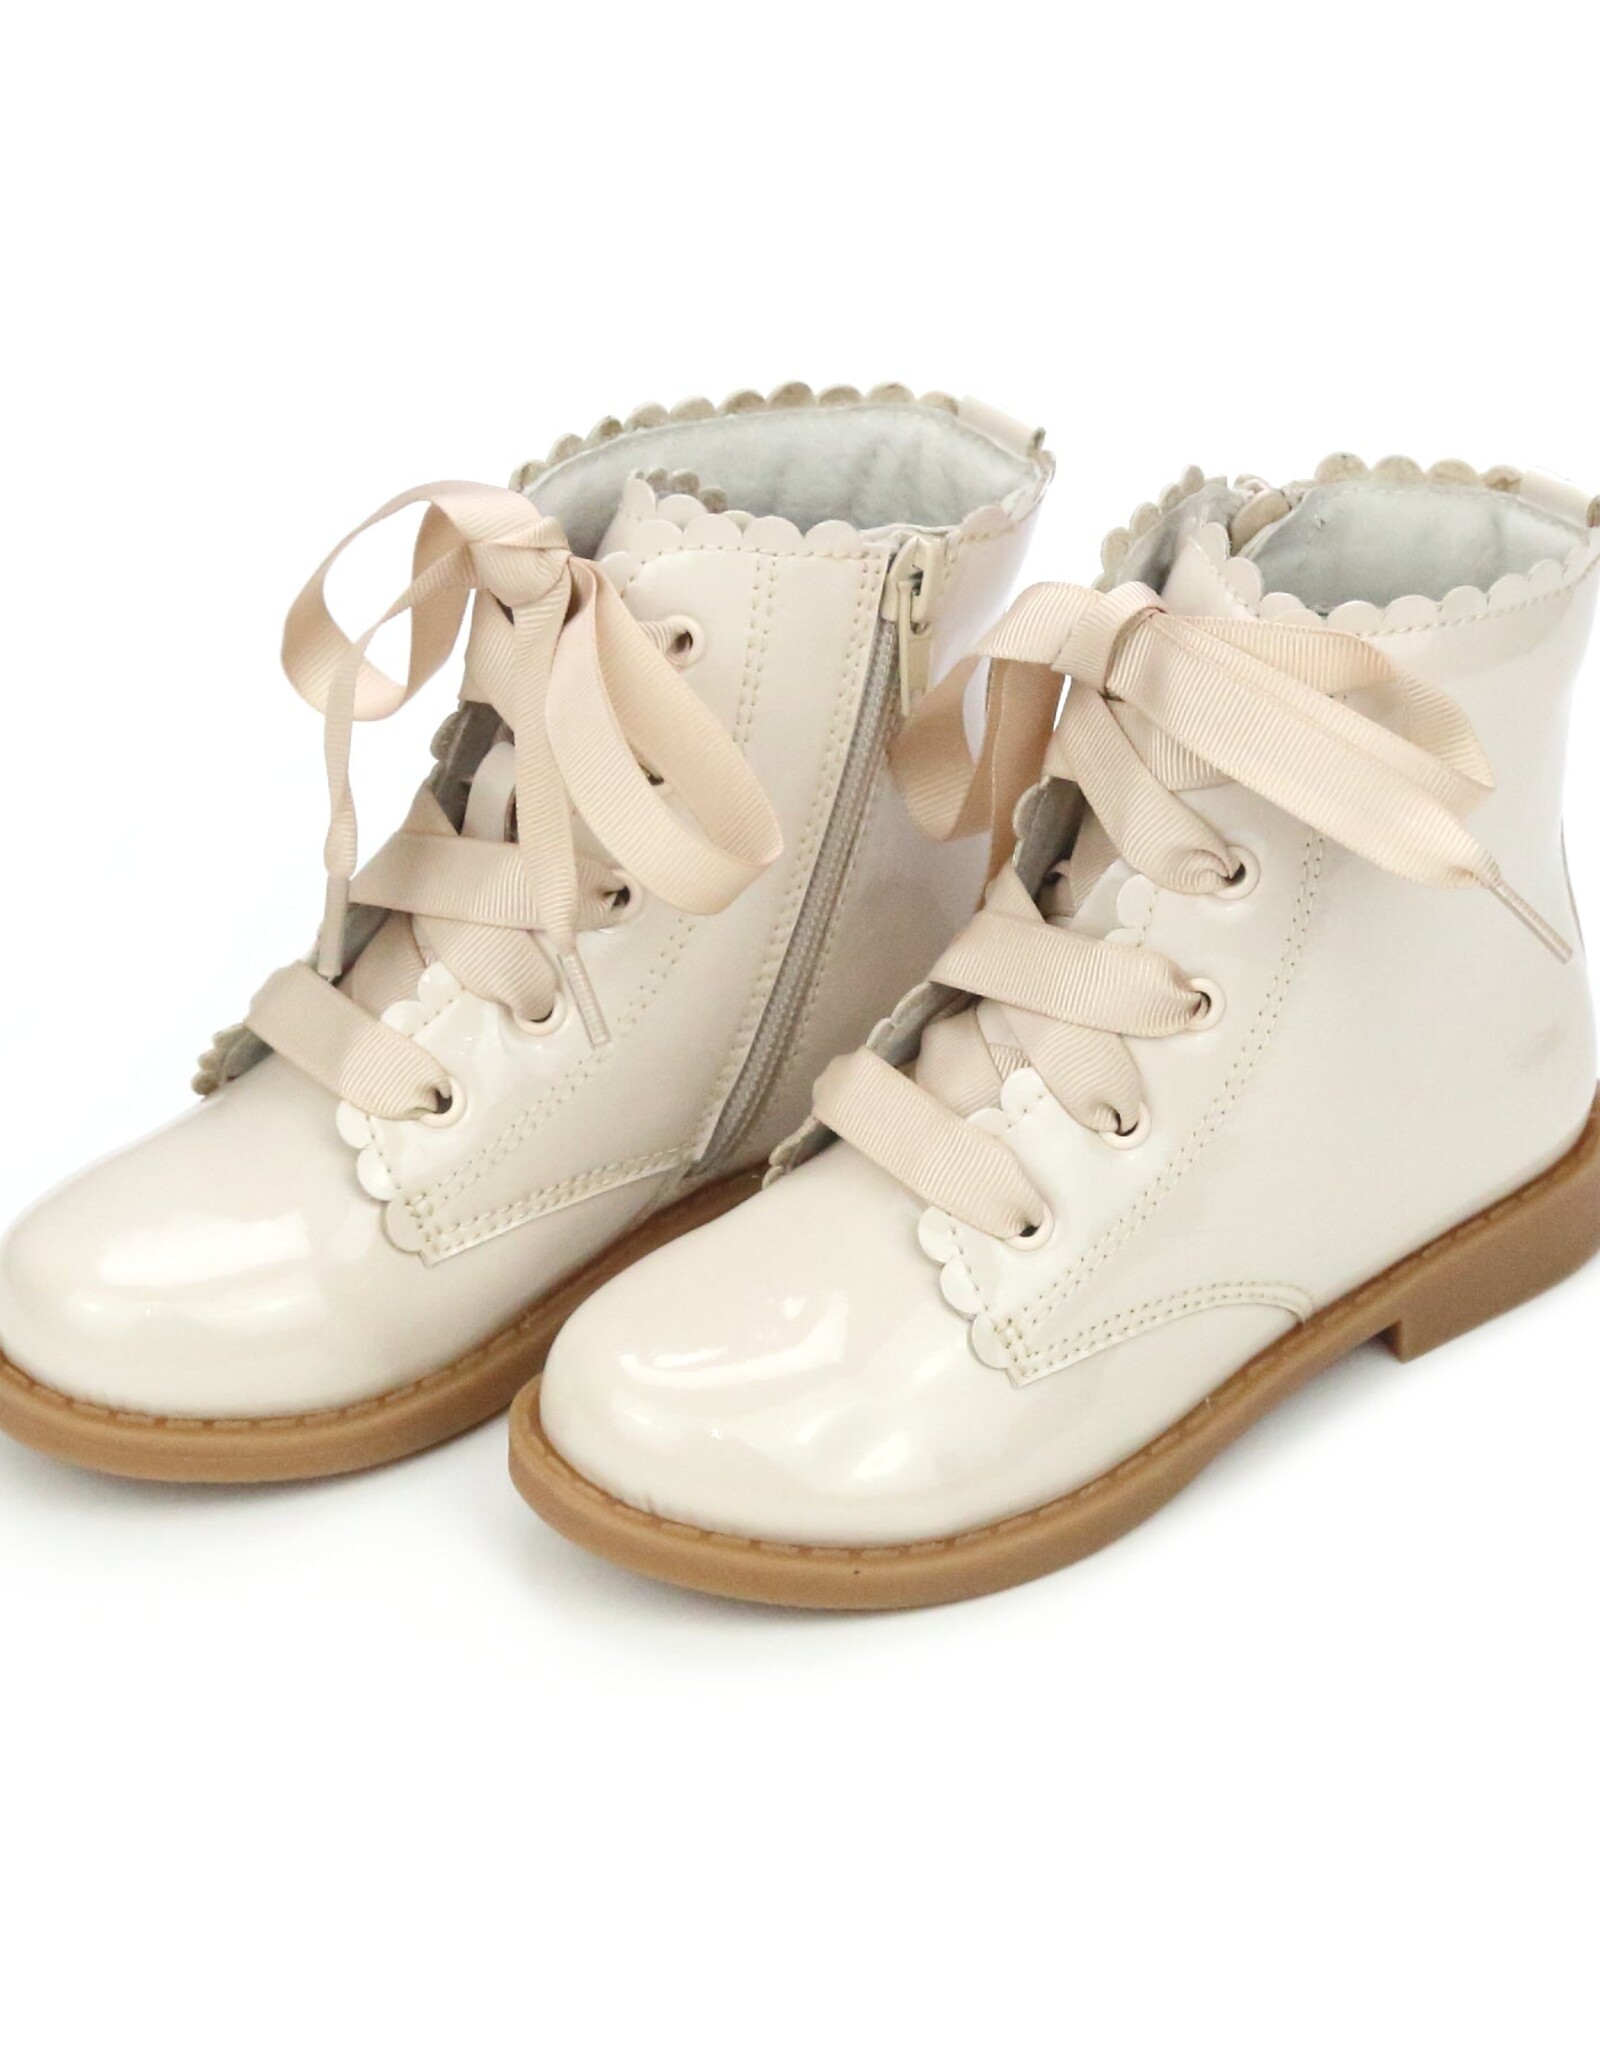 L'Amour F738 Josephine Scallop Boot Cream Patent